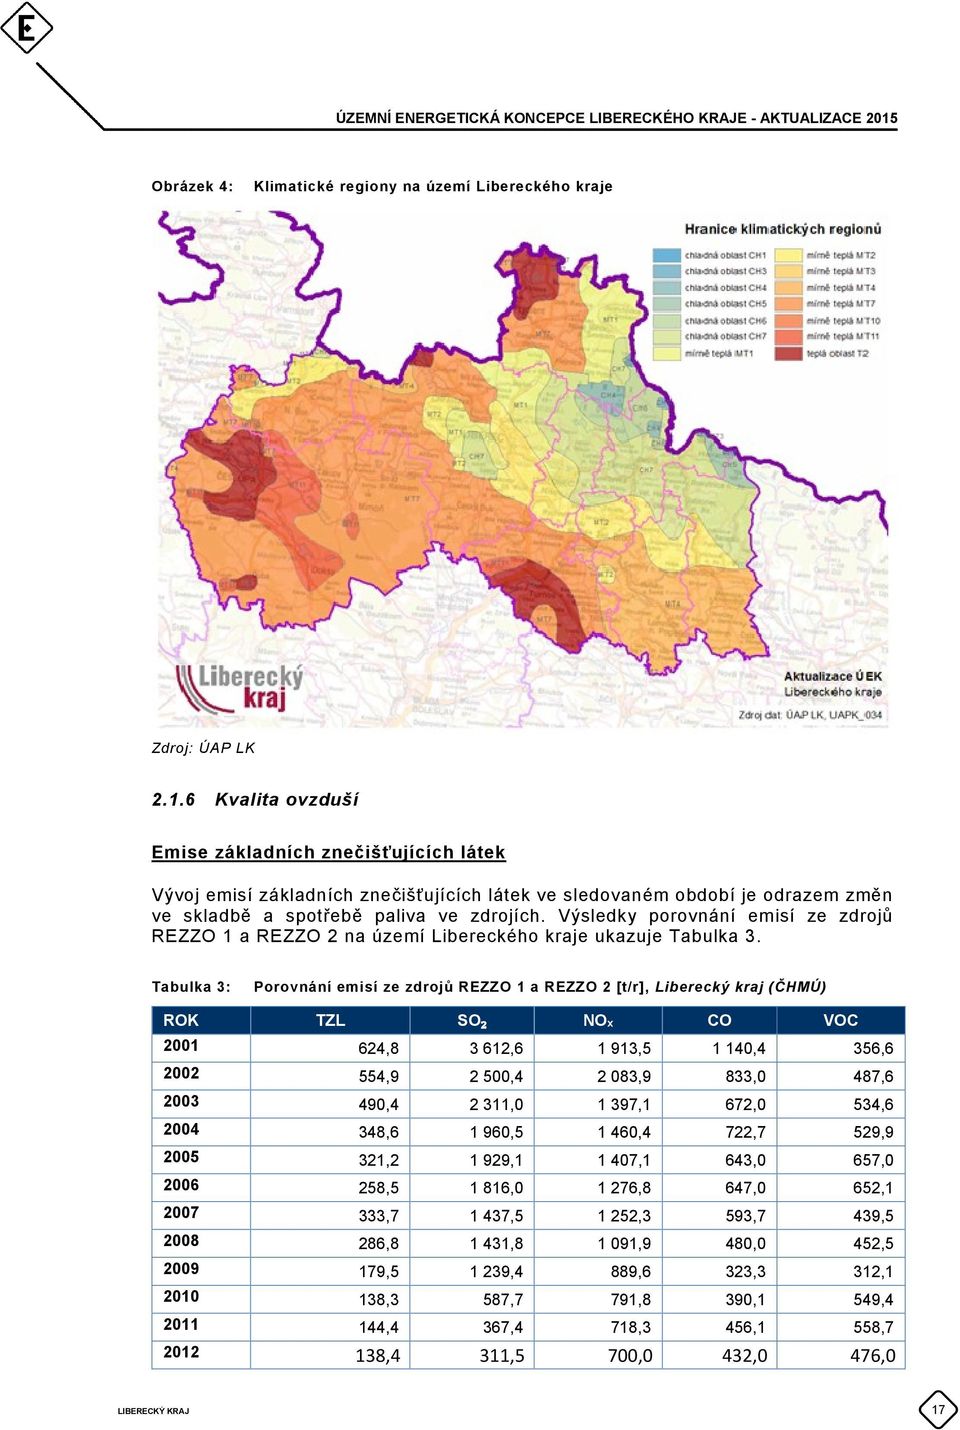 Výsledky porovnání emisí ze zdrojů REZZO 1 a REZZO 2 na území Libereckého kraje ukazuje Tabulka 3.